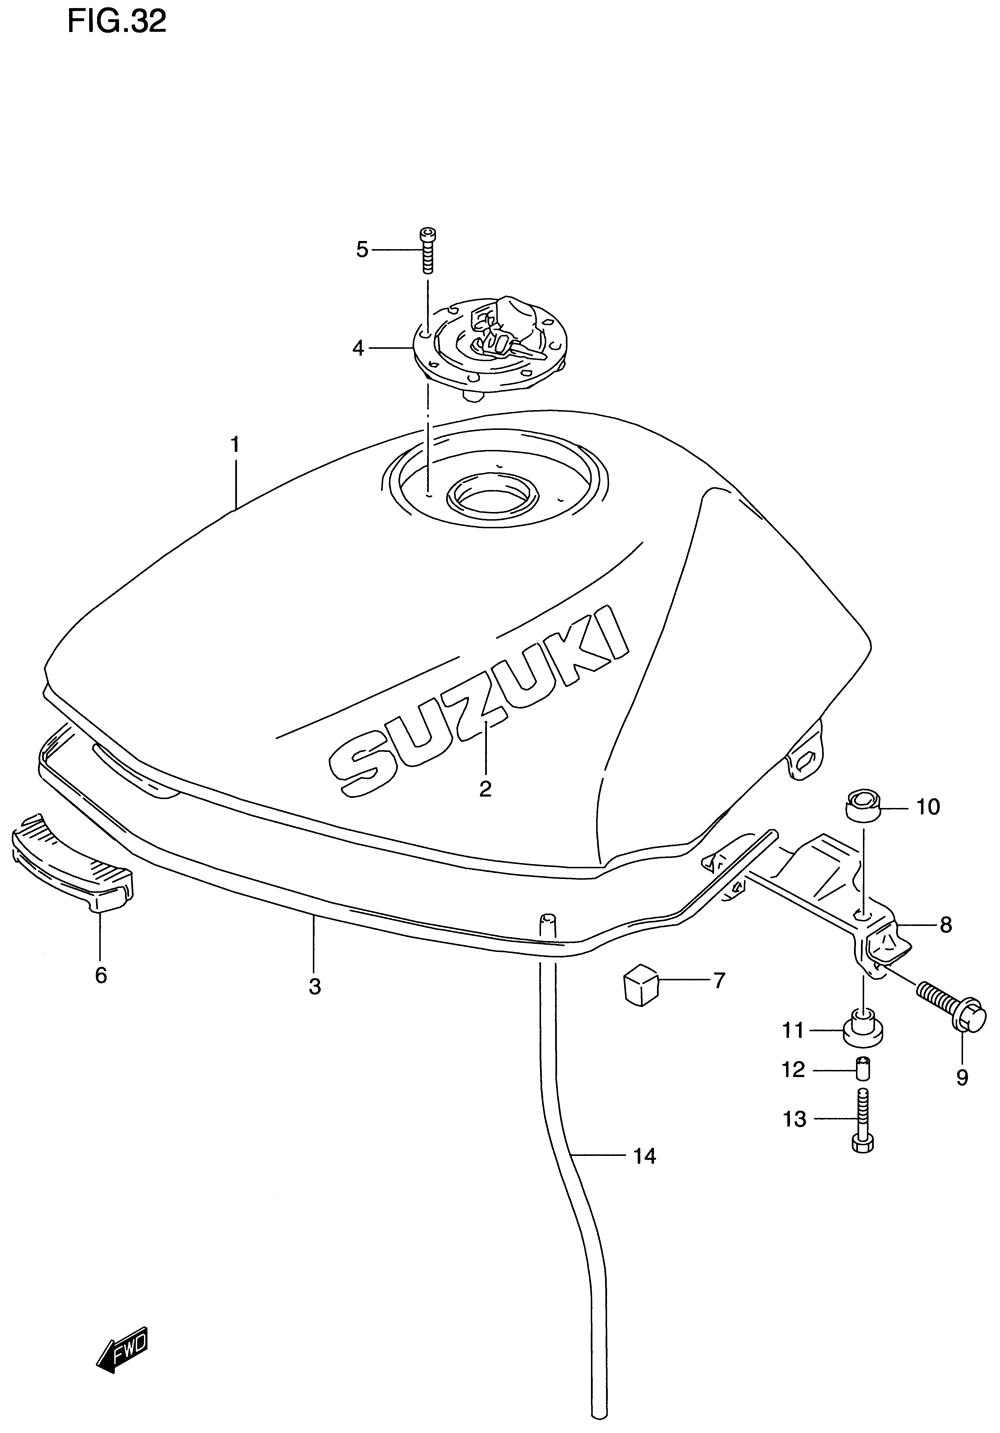 Fuel tank(model v)